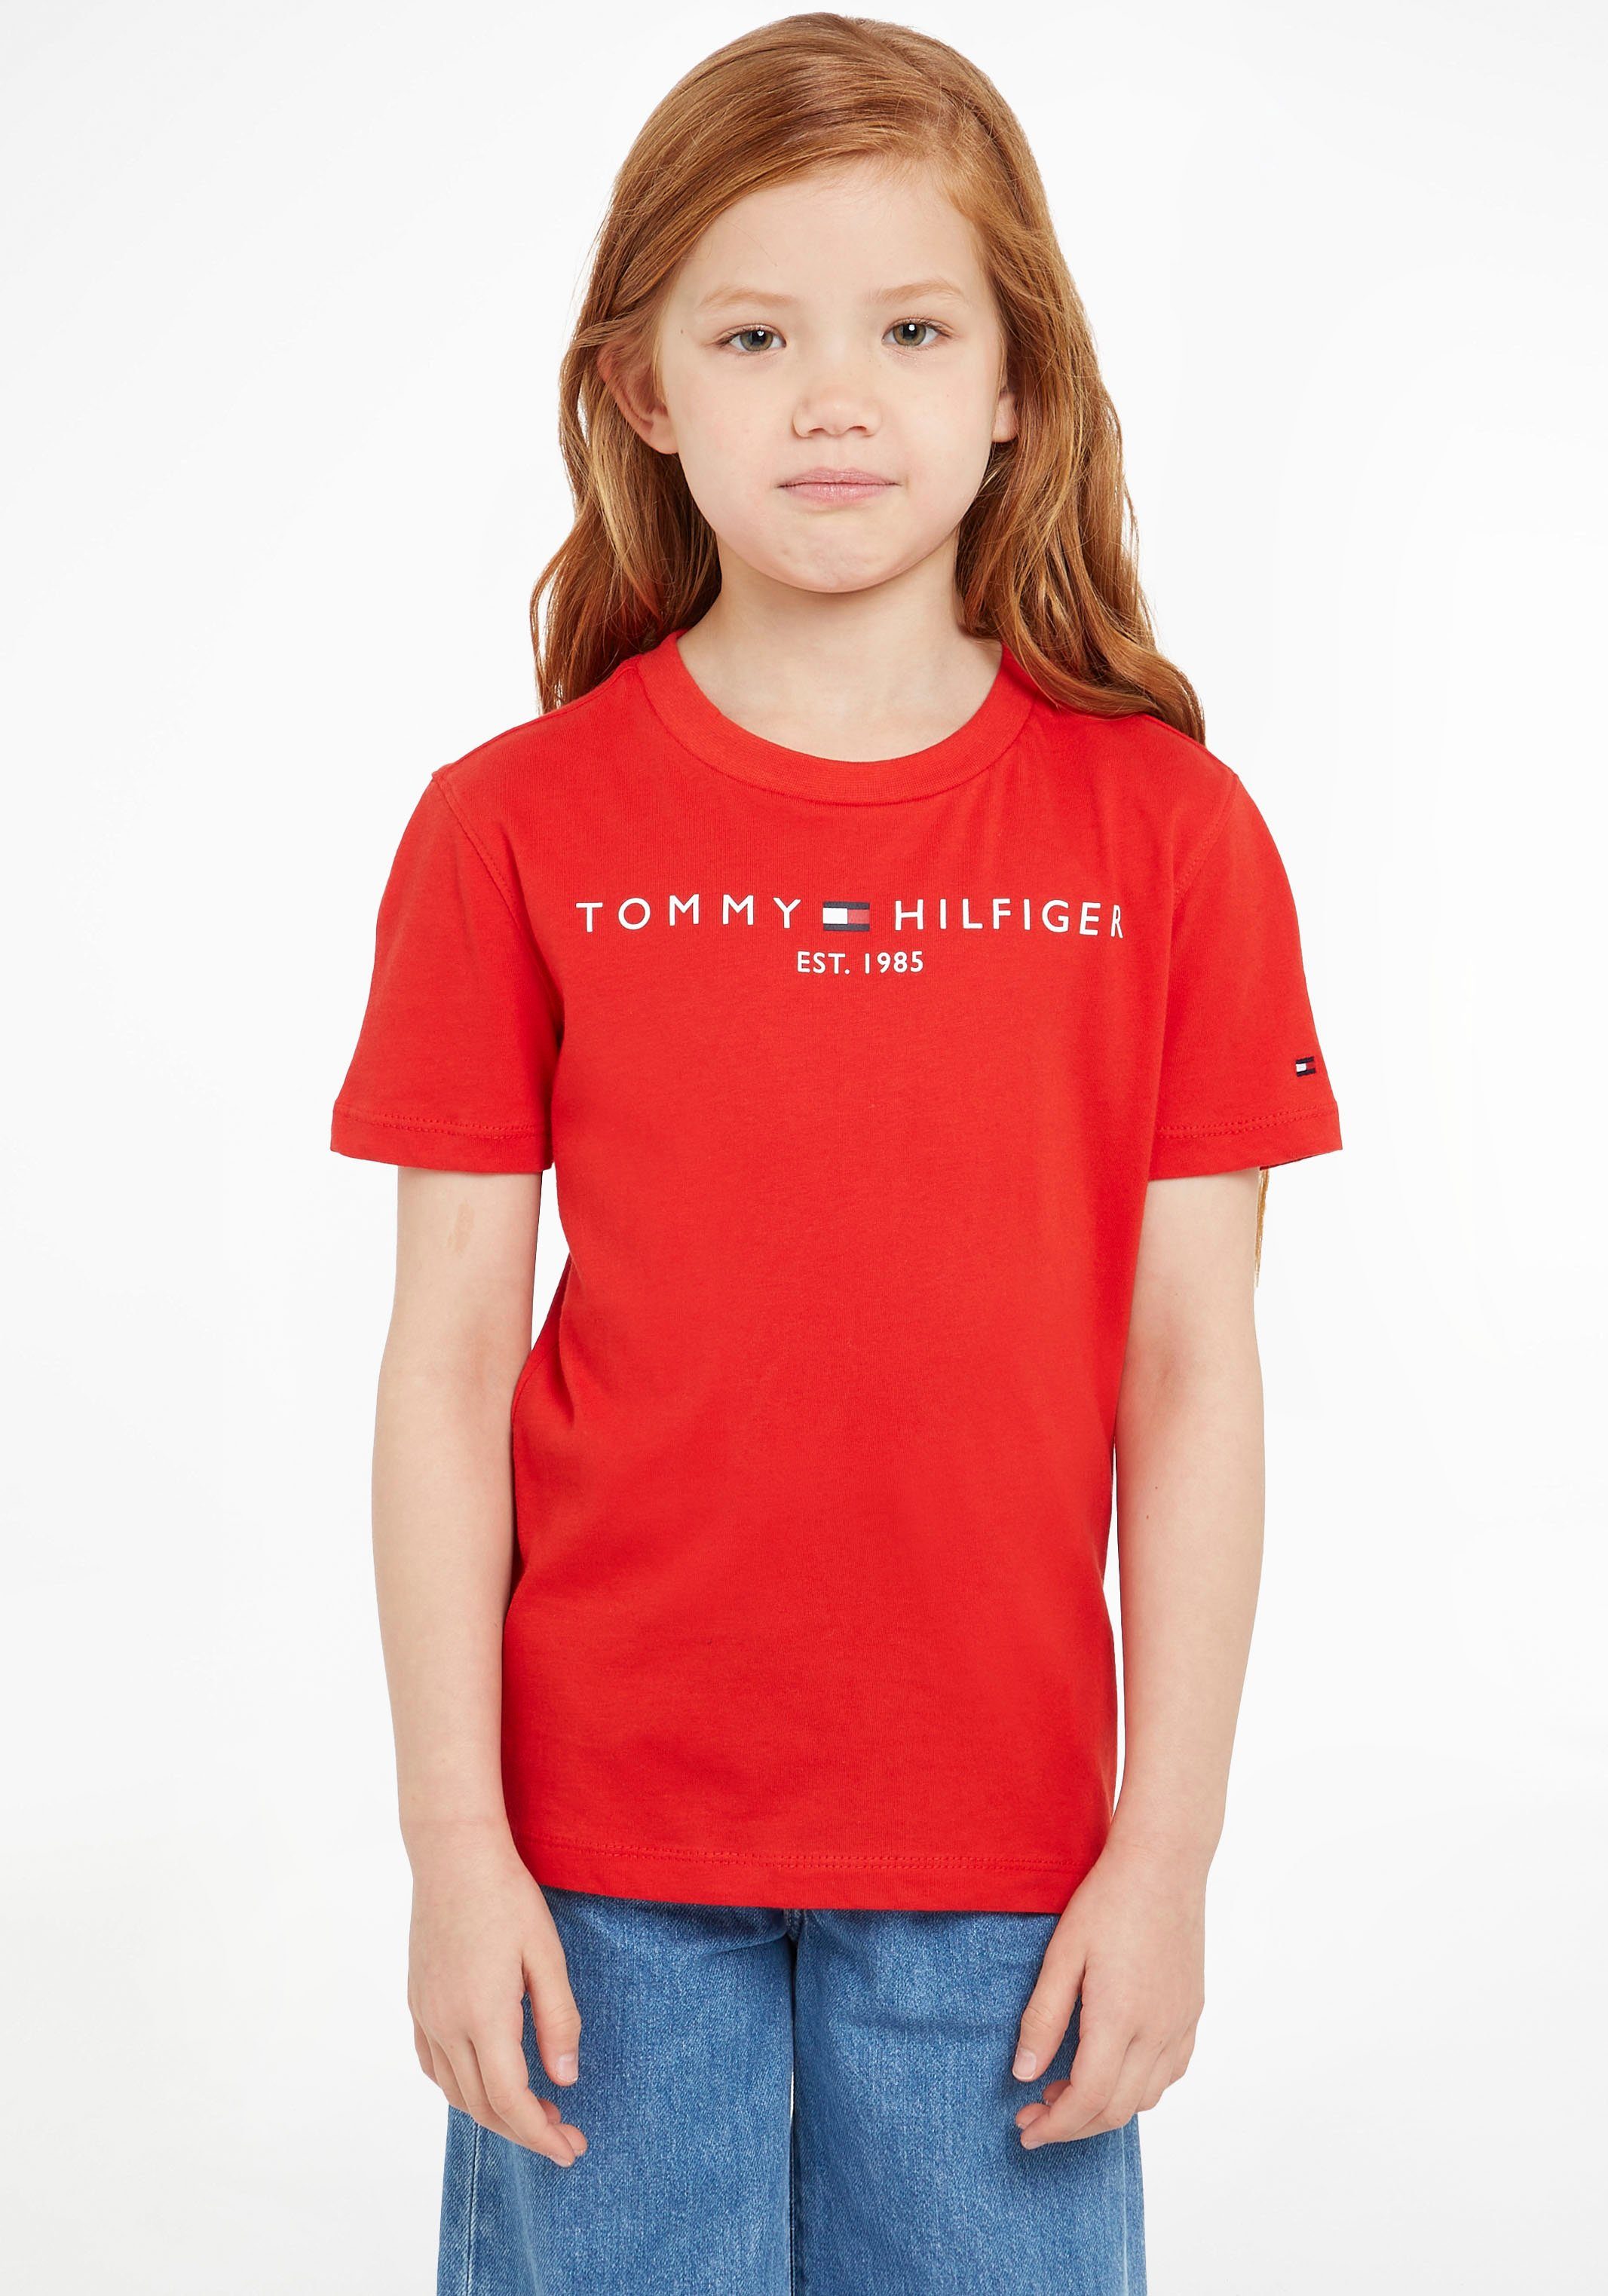 Tommy Hilfiger T-Shirt Junior MiniMe,für und TEE ESSENTIAL Kids Jungen Mädchen Kinder